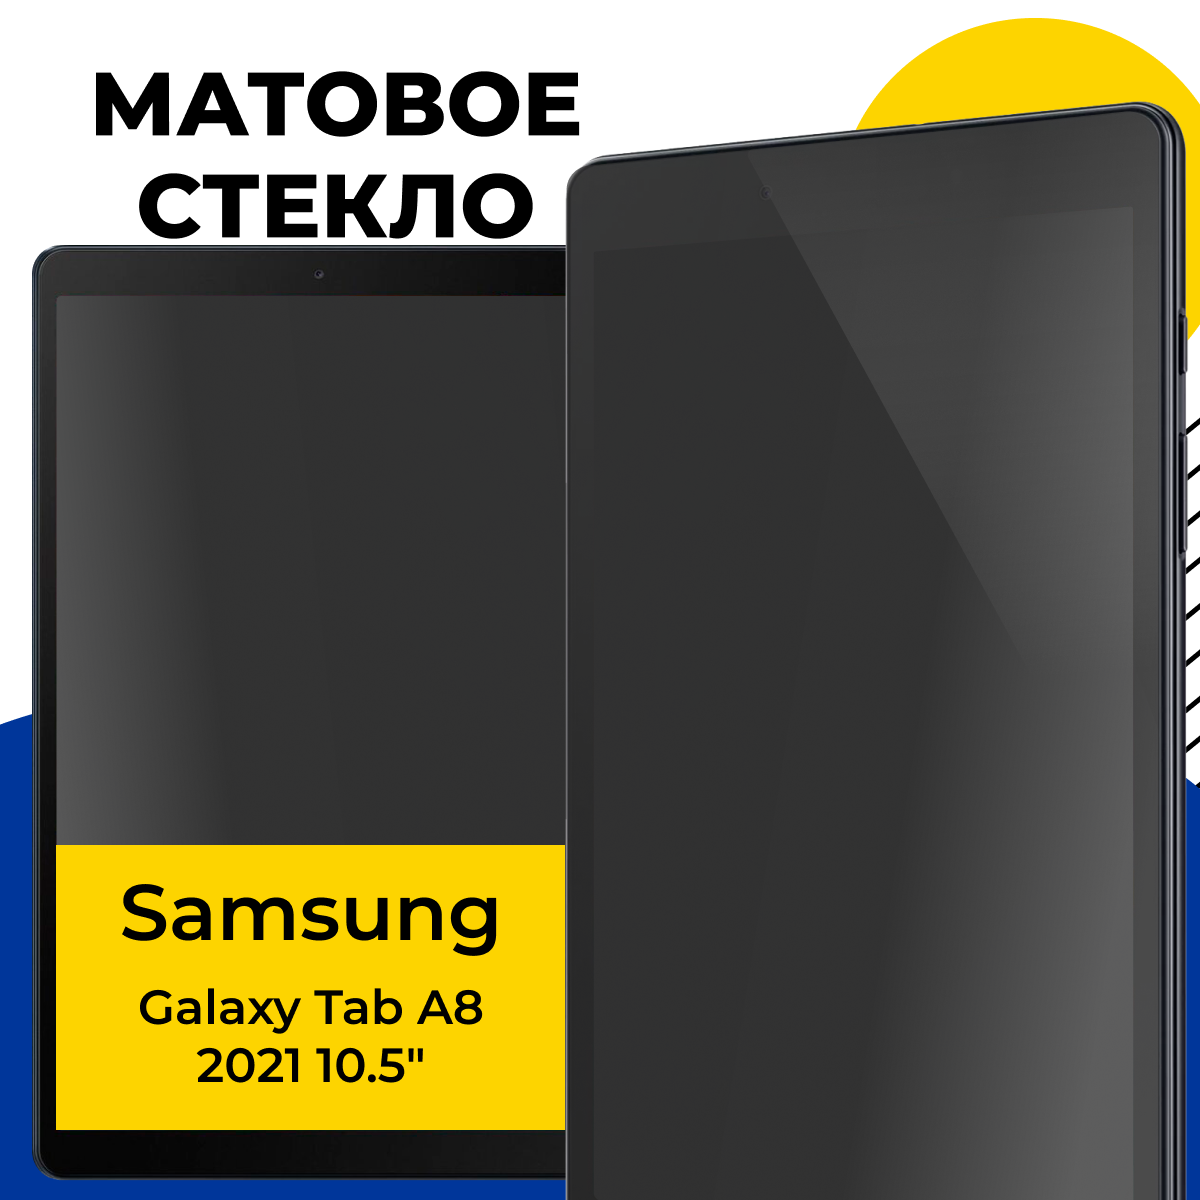 Матовое защитное стекло для планшета Samsung Galaxy Tab A8 2021 10.5